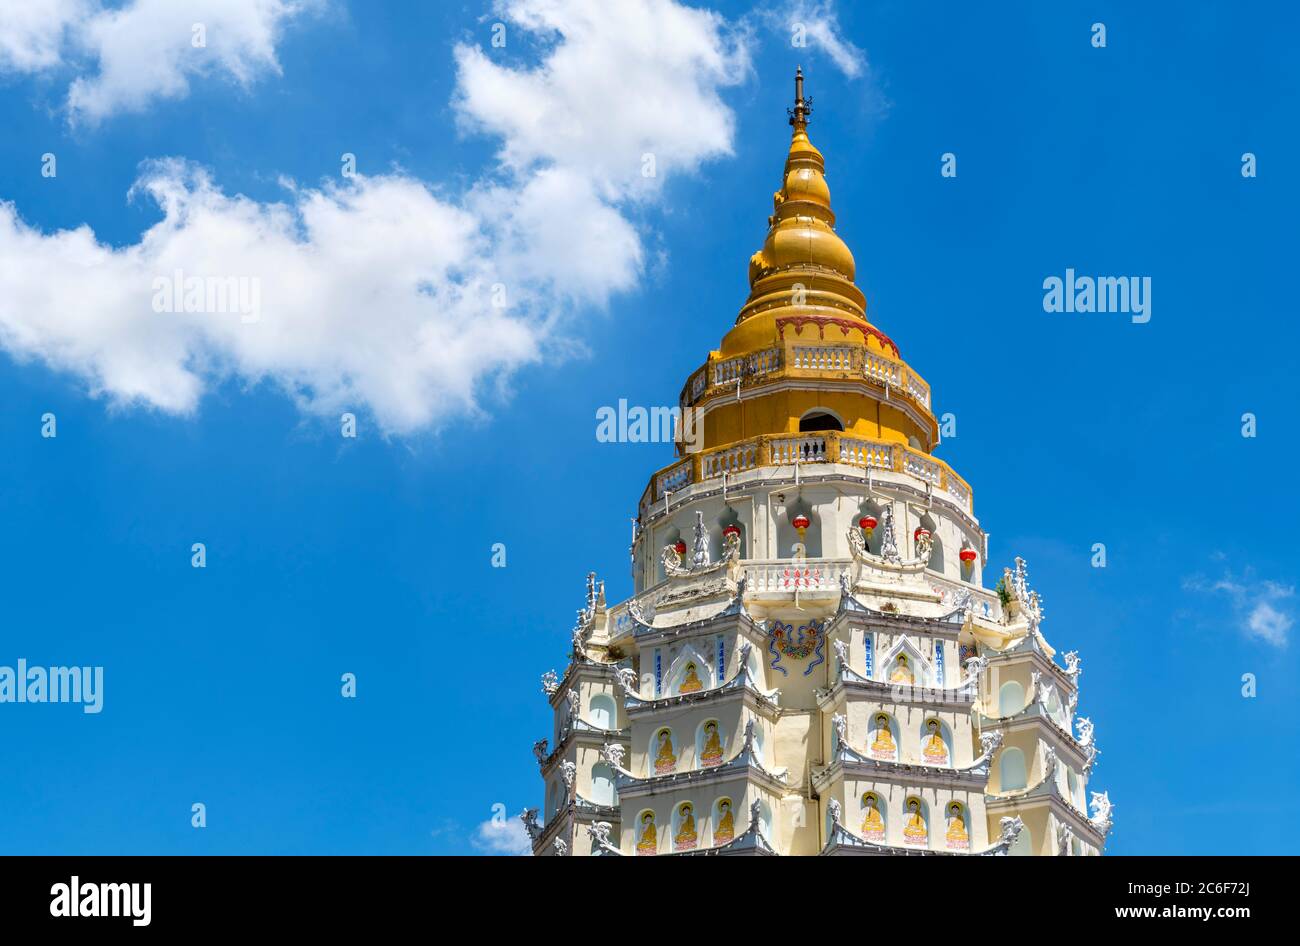 Sommet de la pagode des dix mille Bouddhas au temple de Kek Lok si, un temple bouddhiste à Air ITAM, Penang, Malaisie Banque D'Images